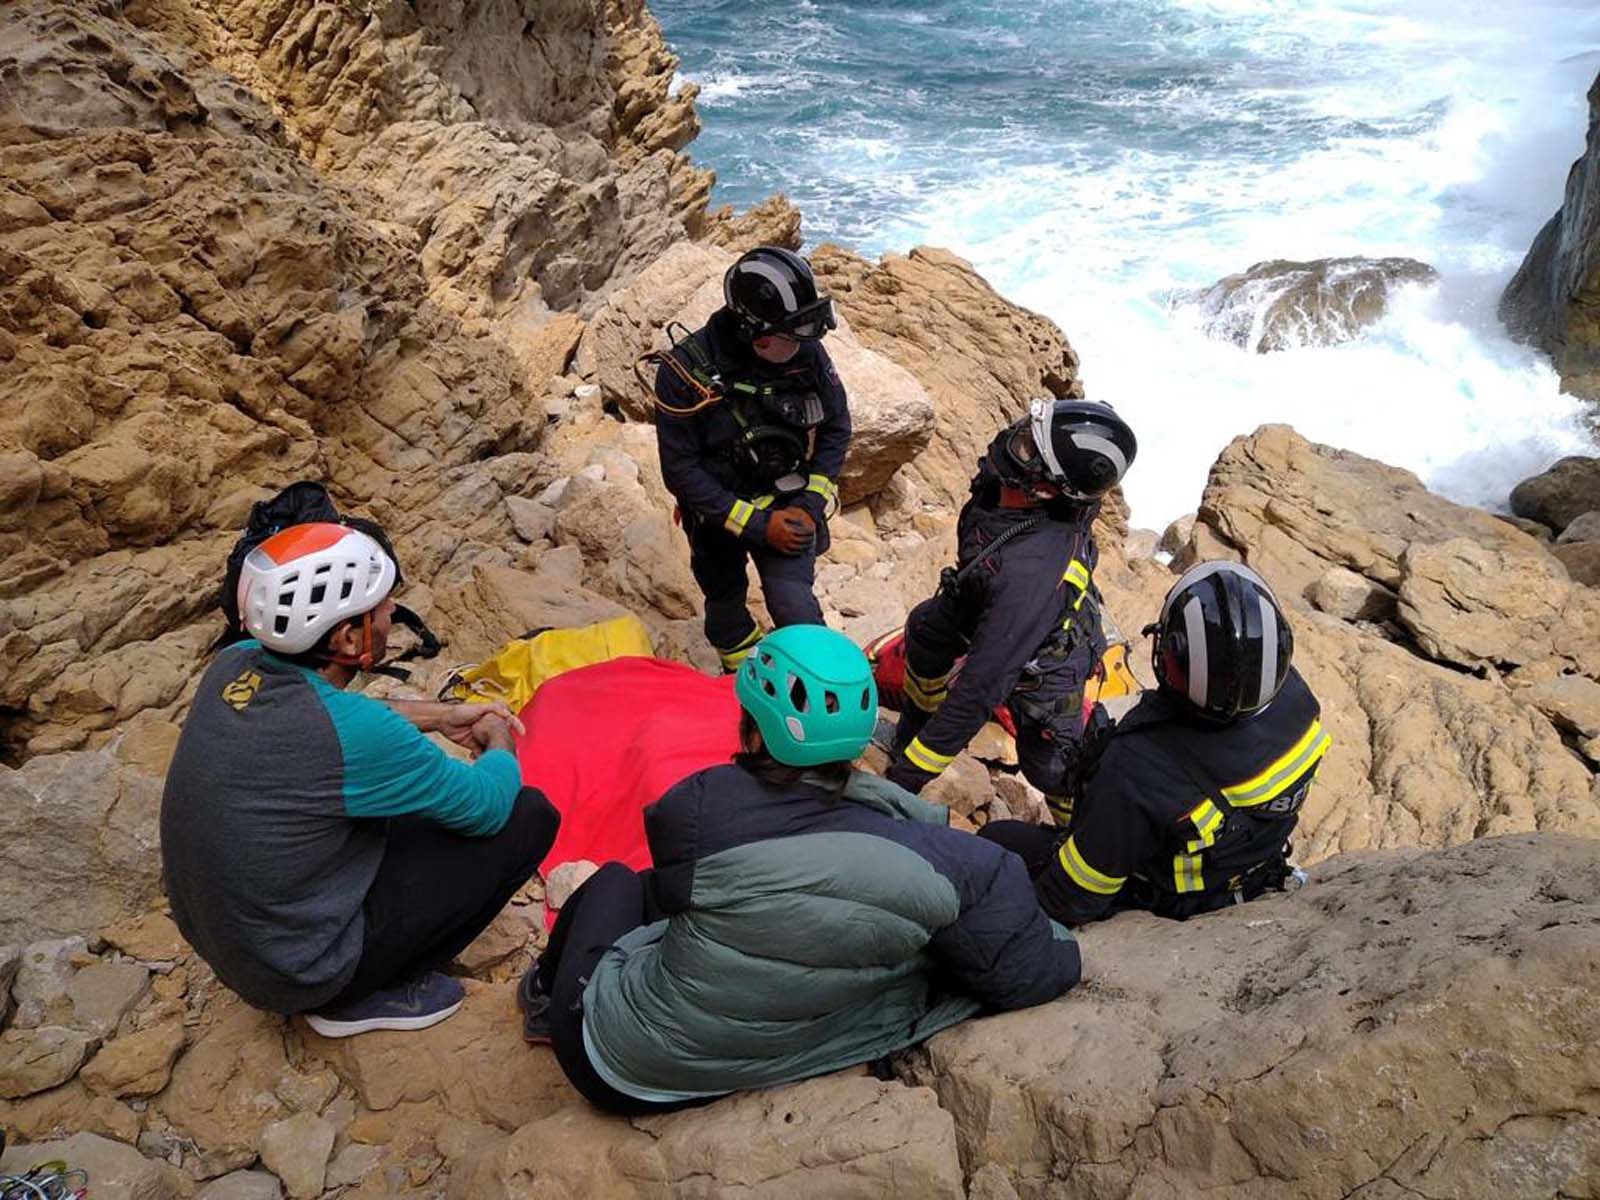 Rescatado en helicóptero un escalador que cayó desde ocho metros en Ibiza